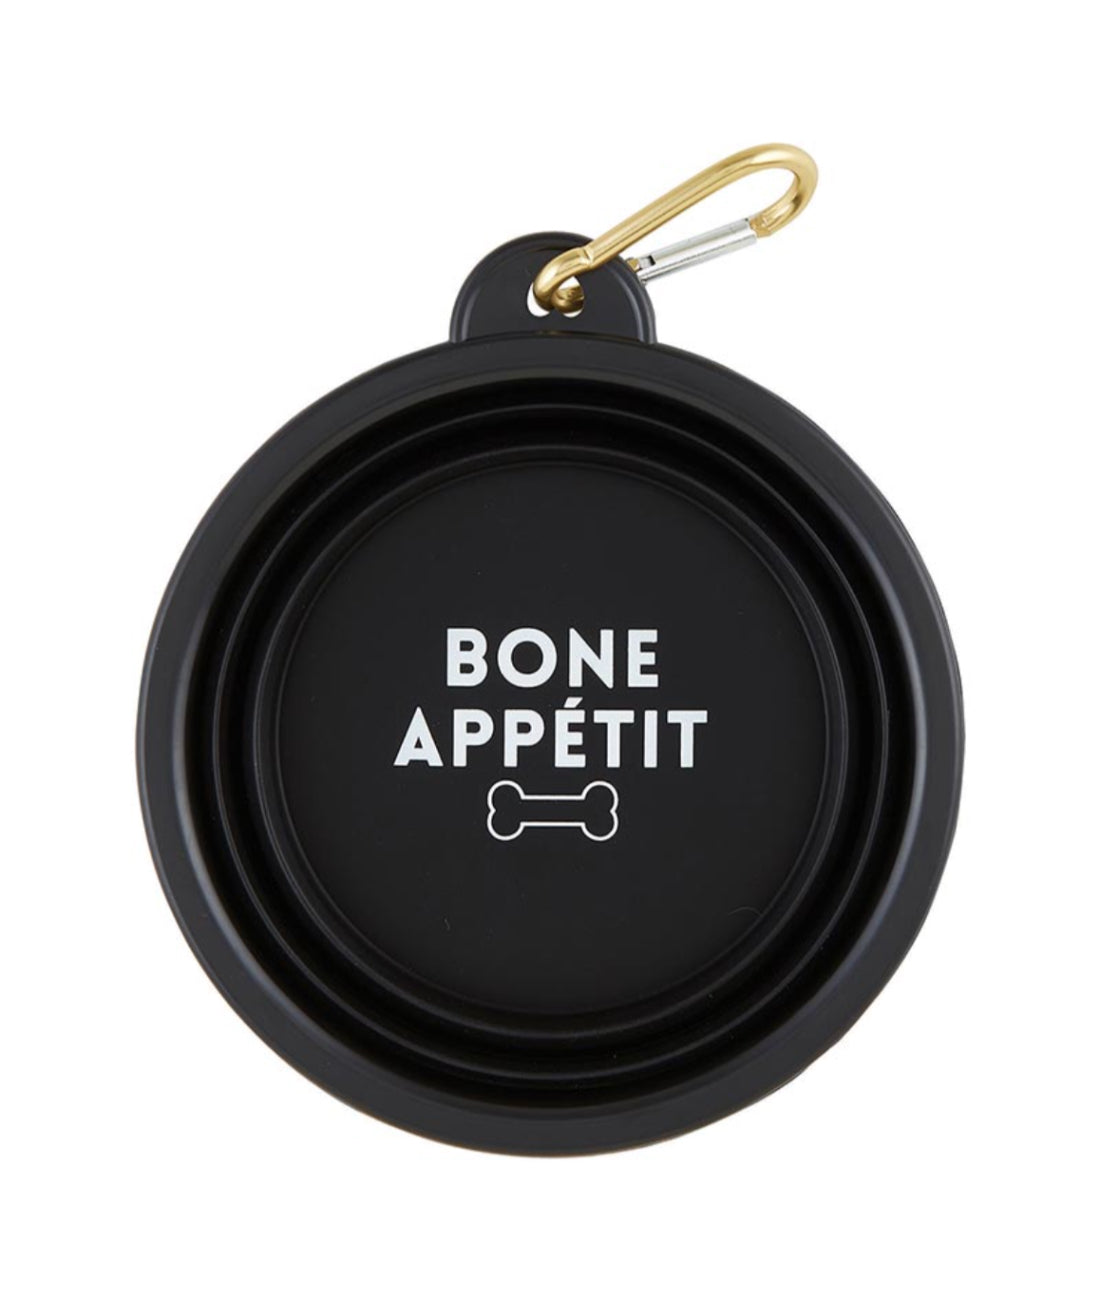 Collapsible Pet Bowl - Bone Appétit